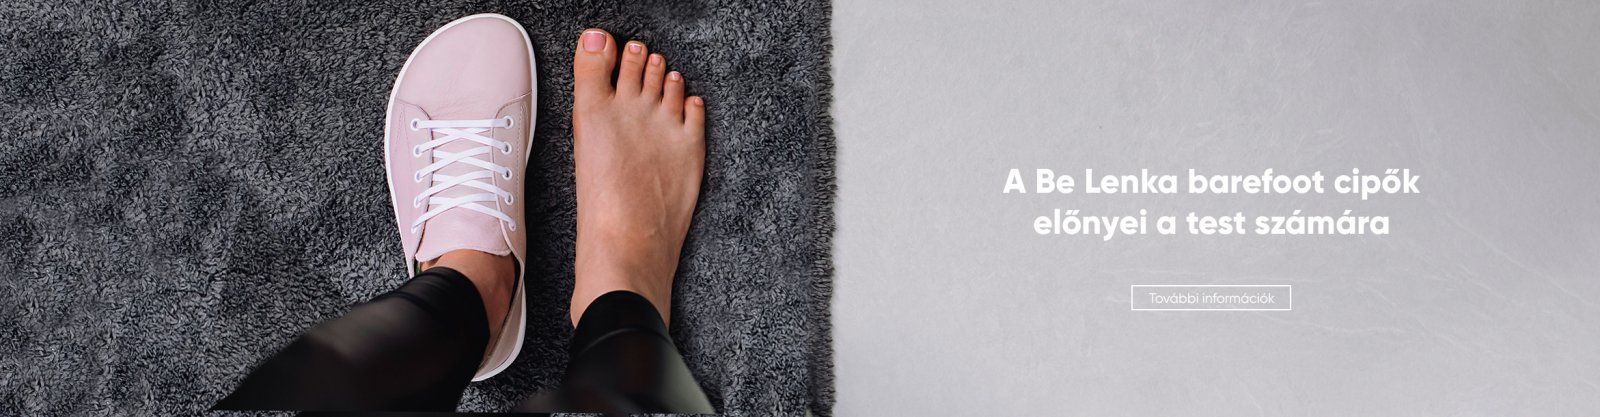 Barefoot lábbeli – prémium minőségű cipő | Be Lenka Official